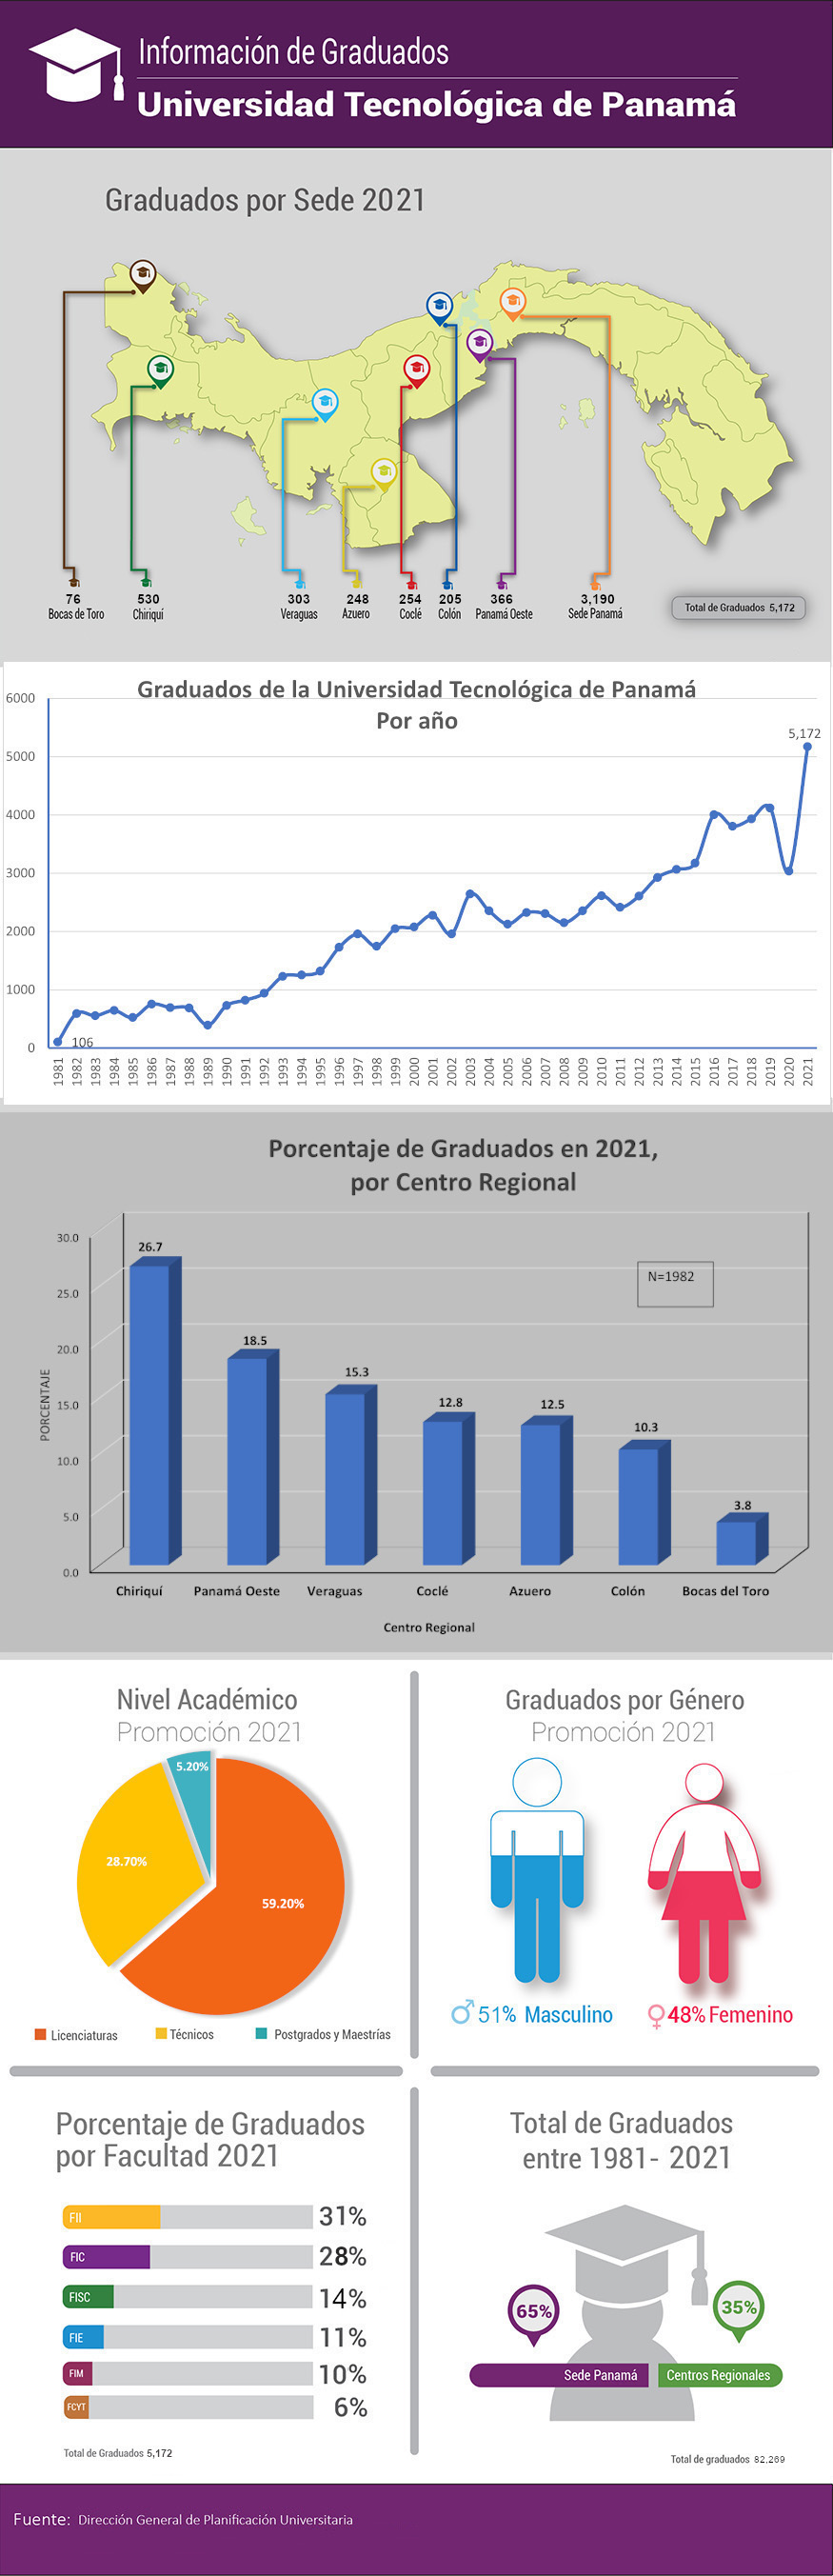 Infografía de graduados por sede de la Universidad Tecnológica de Panamá